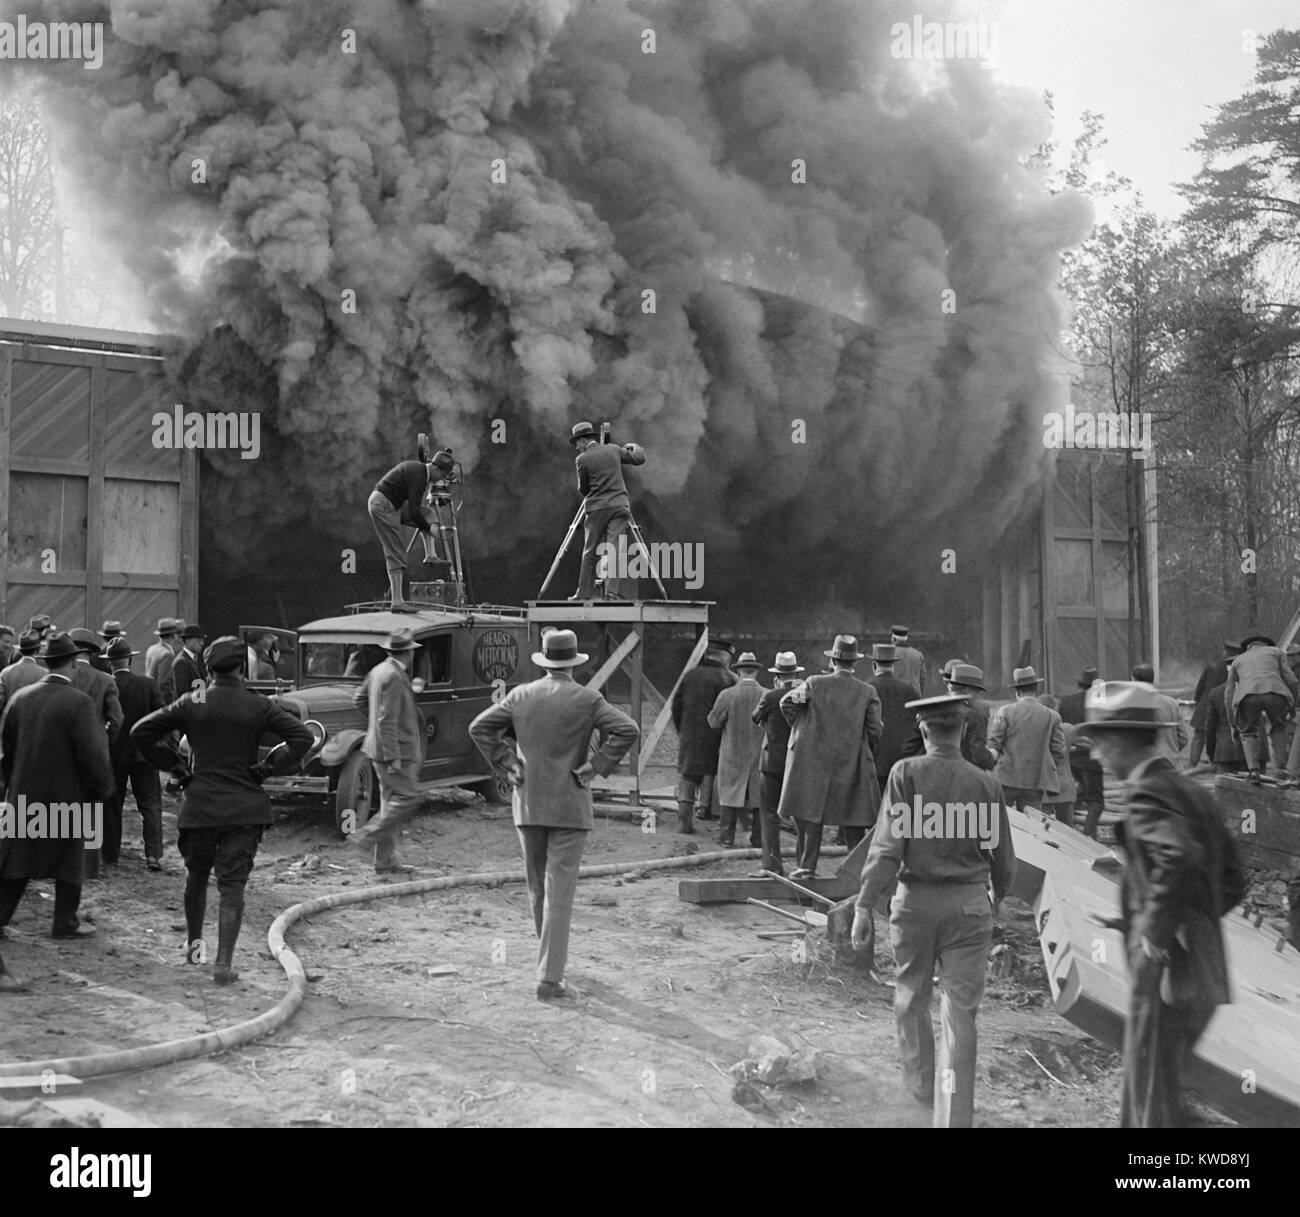 Hearst Movietone cameraman di film di un incendio in Washington, D.C. in c. 1920. Un uomo si erge sul tetto del suo carrello come fumi densi riversa da un edificio (BSLOC 2016 8 156) Foto Stock